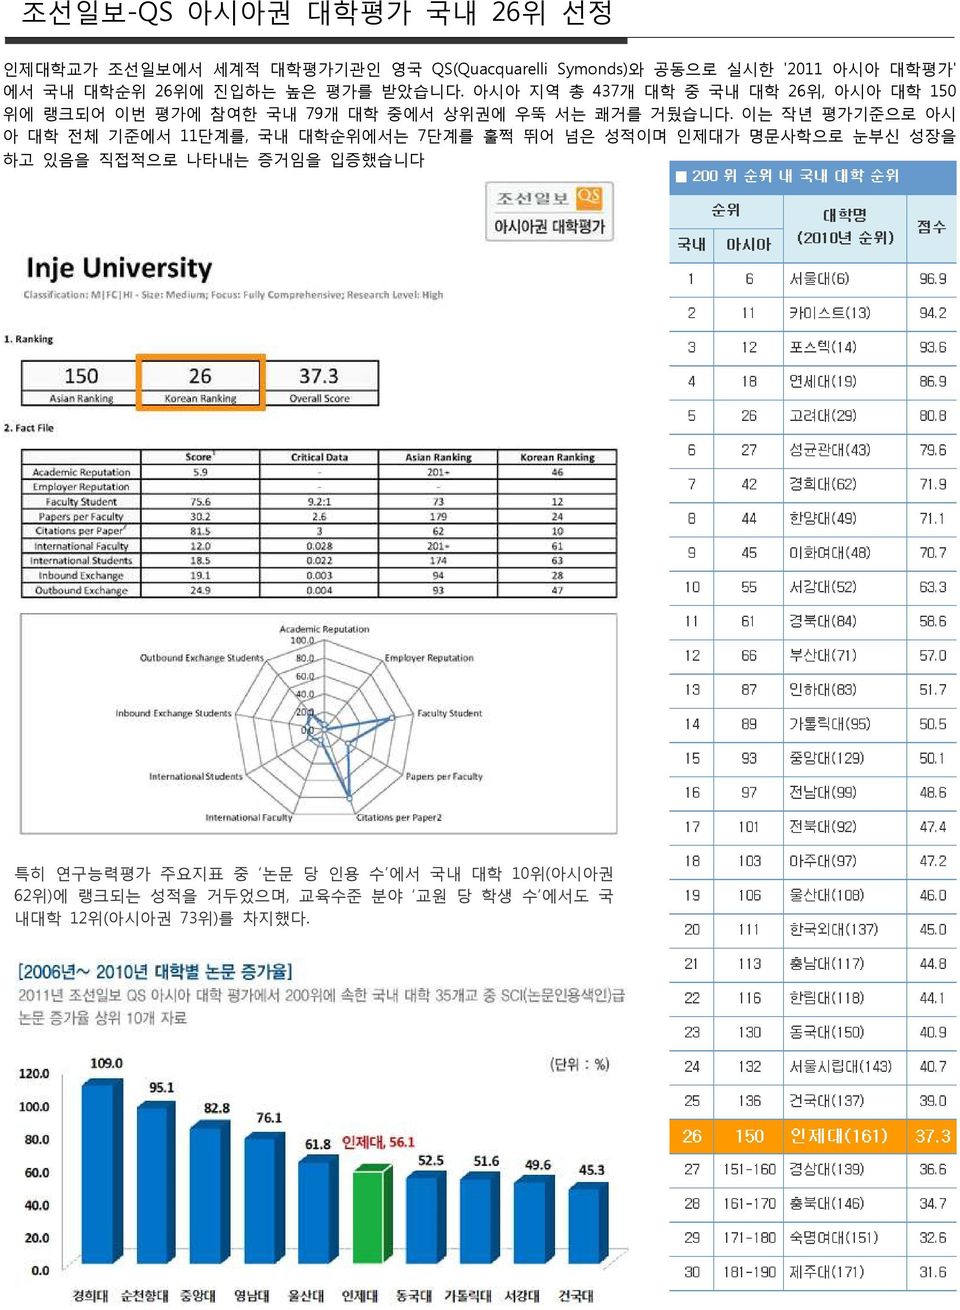 아시아 지역 총 437개 대학 중 국내 대학 26위, 아시아 대학 150 위에 랭크되어 이번 평가에 참여한 국내 79개 대학 중에서 상위권에 우뚝 서는 쾌거를 거뒀습니다.